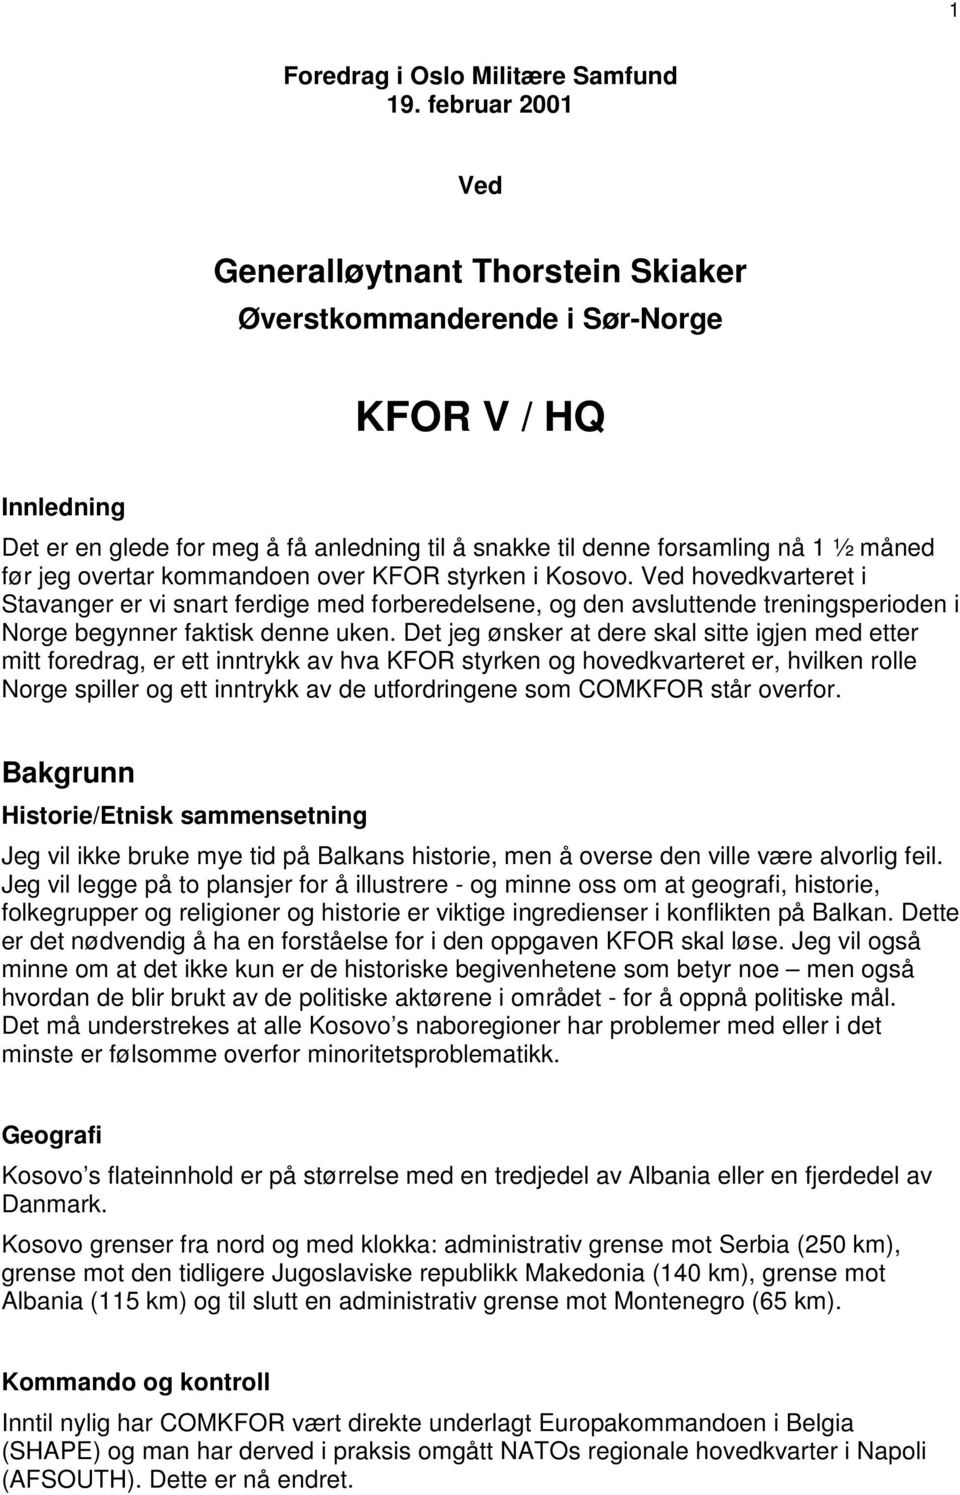 overtar kommandoen over KFOR styrken i Kosovo. Ved hovedkvarteret i Stavanger er vi snart ferdige med forberedelsene, og den avsluttende treningsperioden i Norge begynner faktisk denne uken.